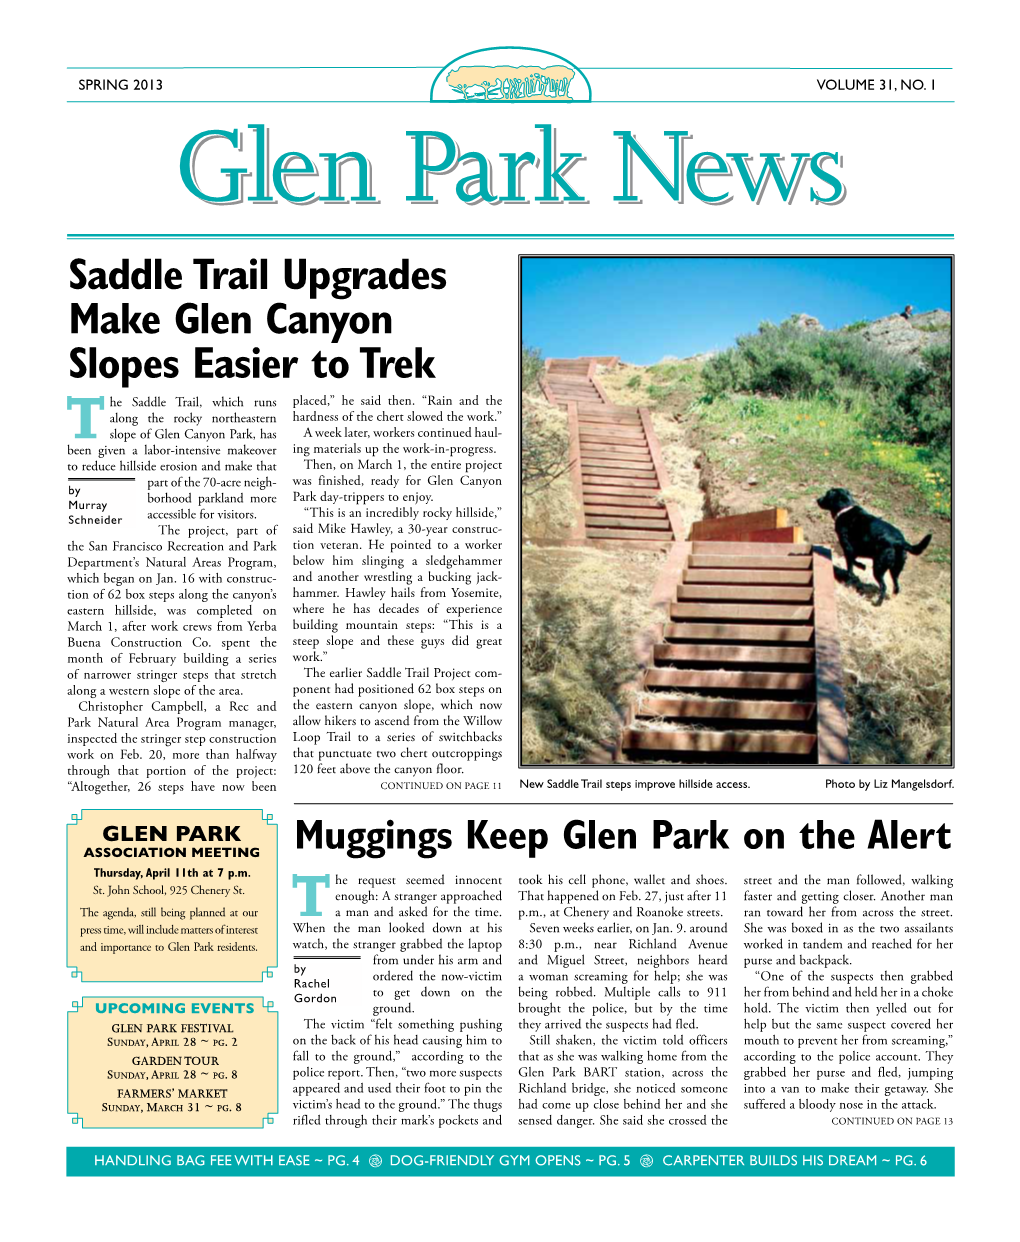 Glen Park News Spring 2013